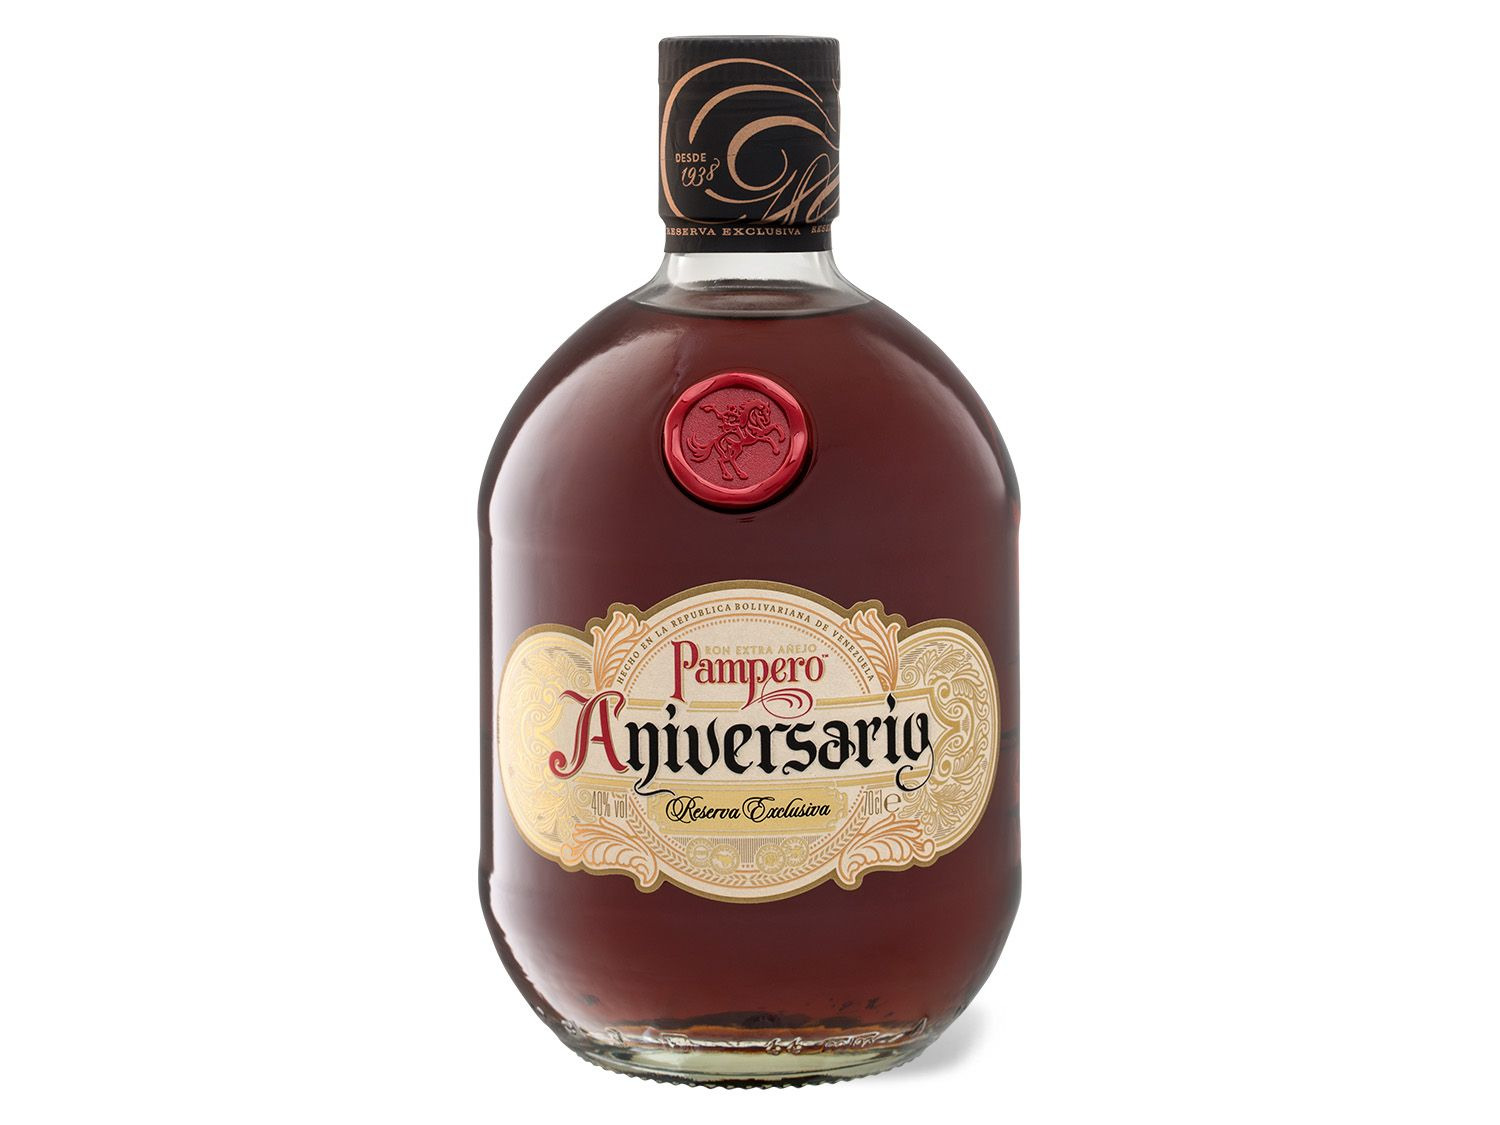 PAMPERO Aniversario Reserva Exclusiva Añejo in Led… Rum